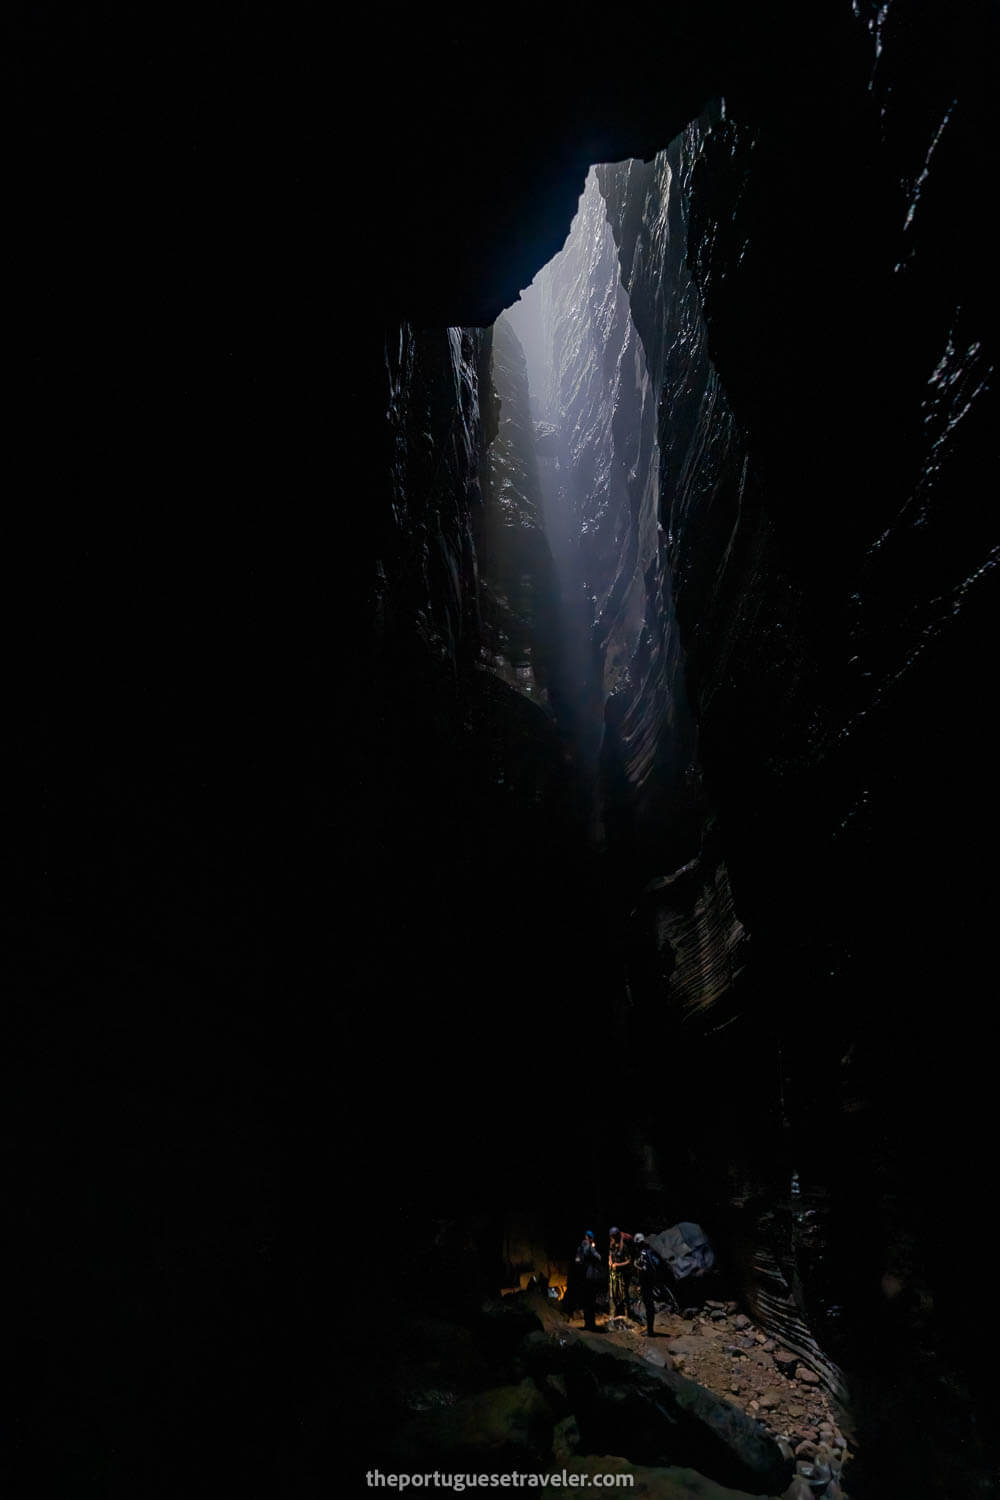 The entrance to the Cueva de Los Tayos